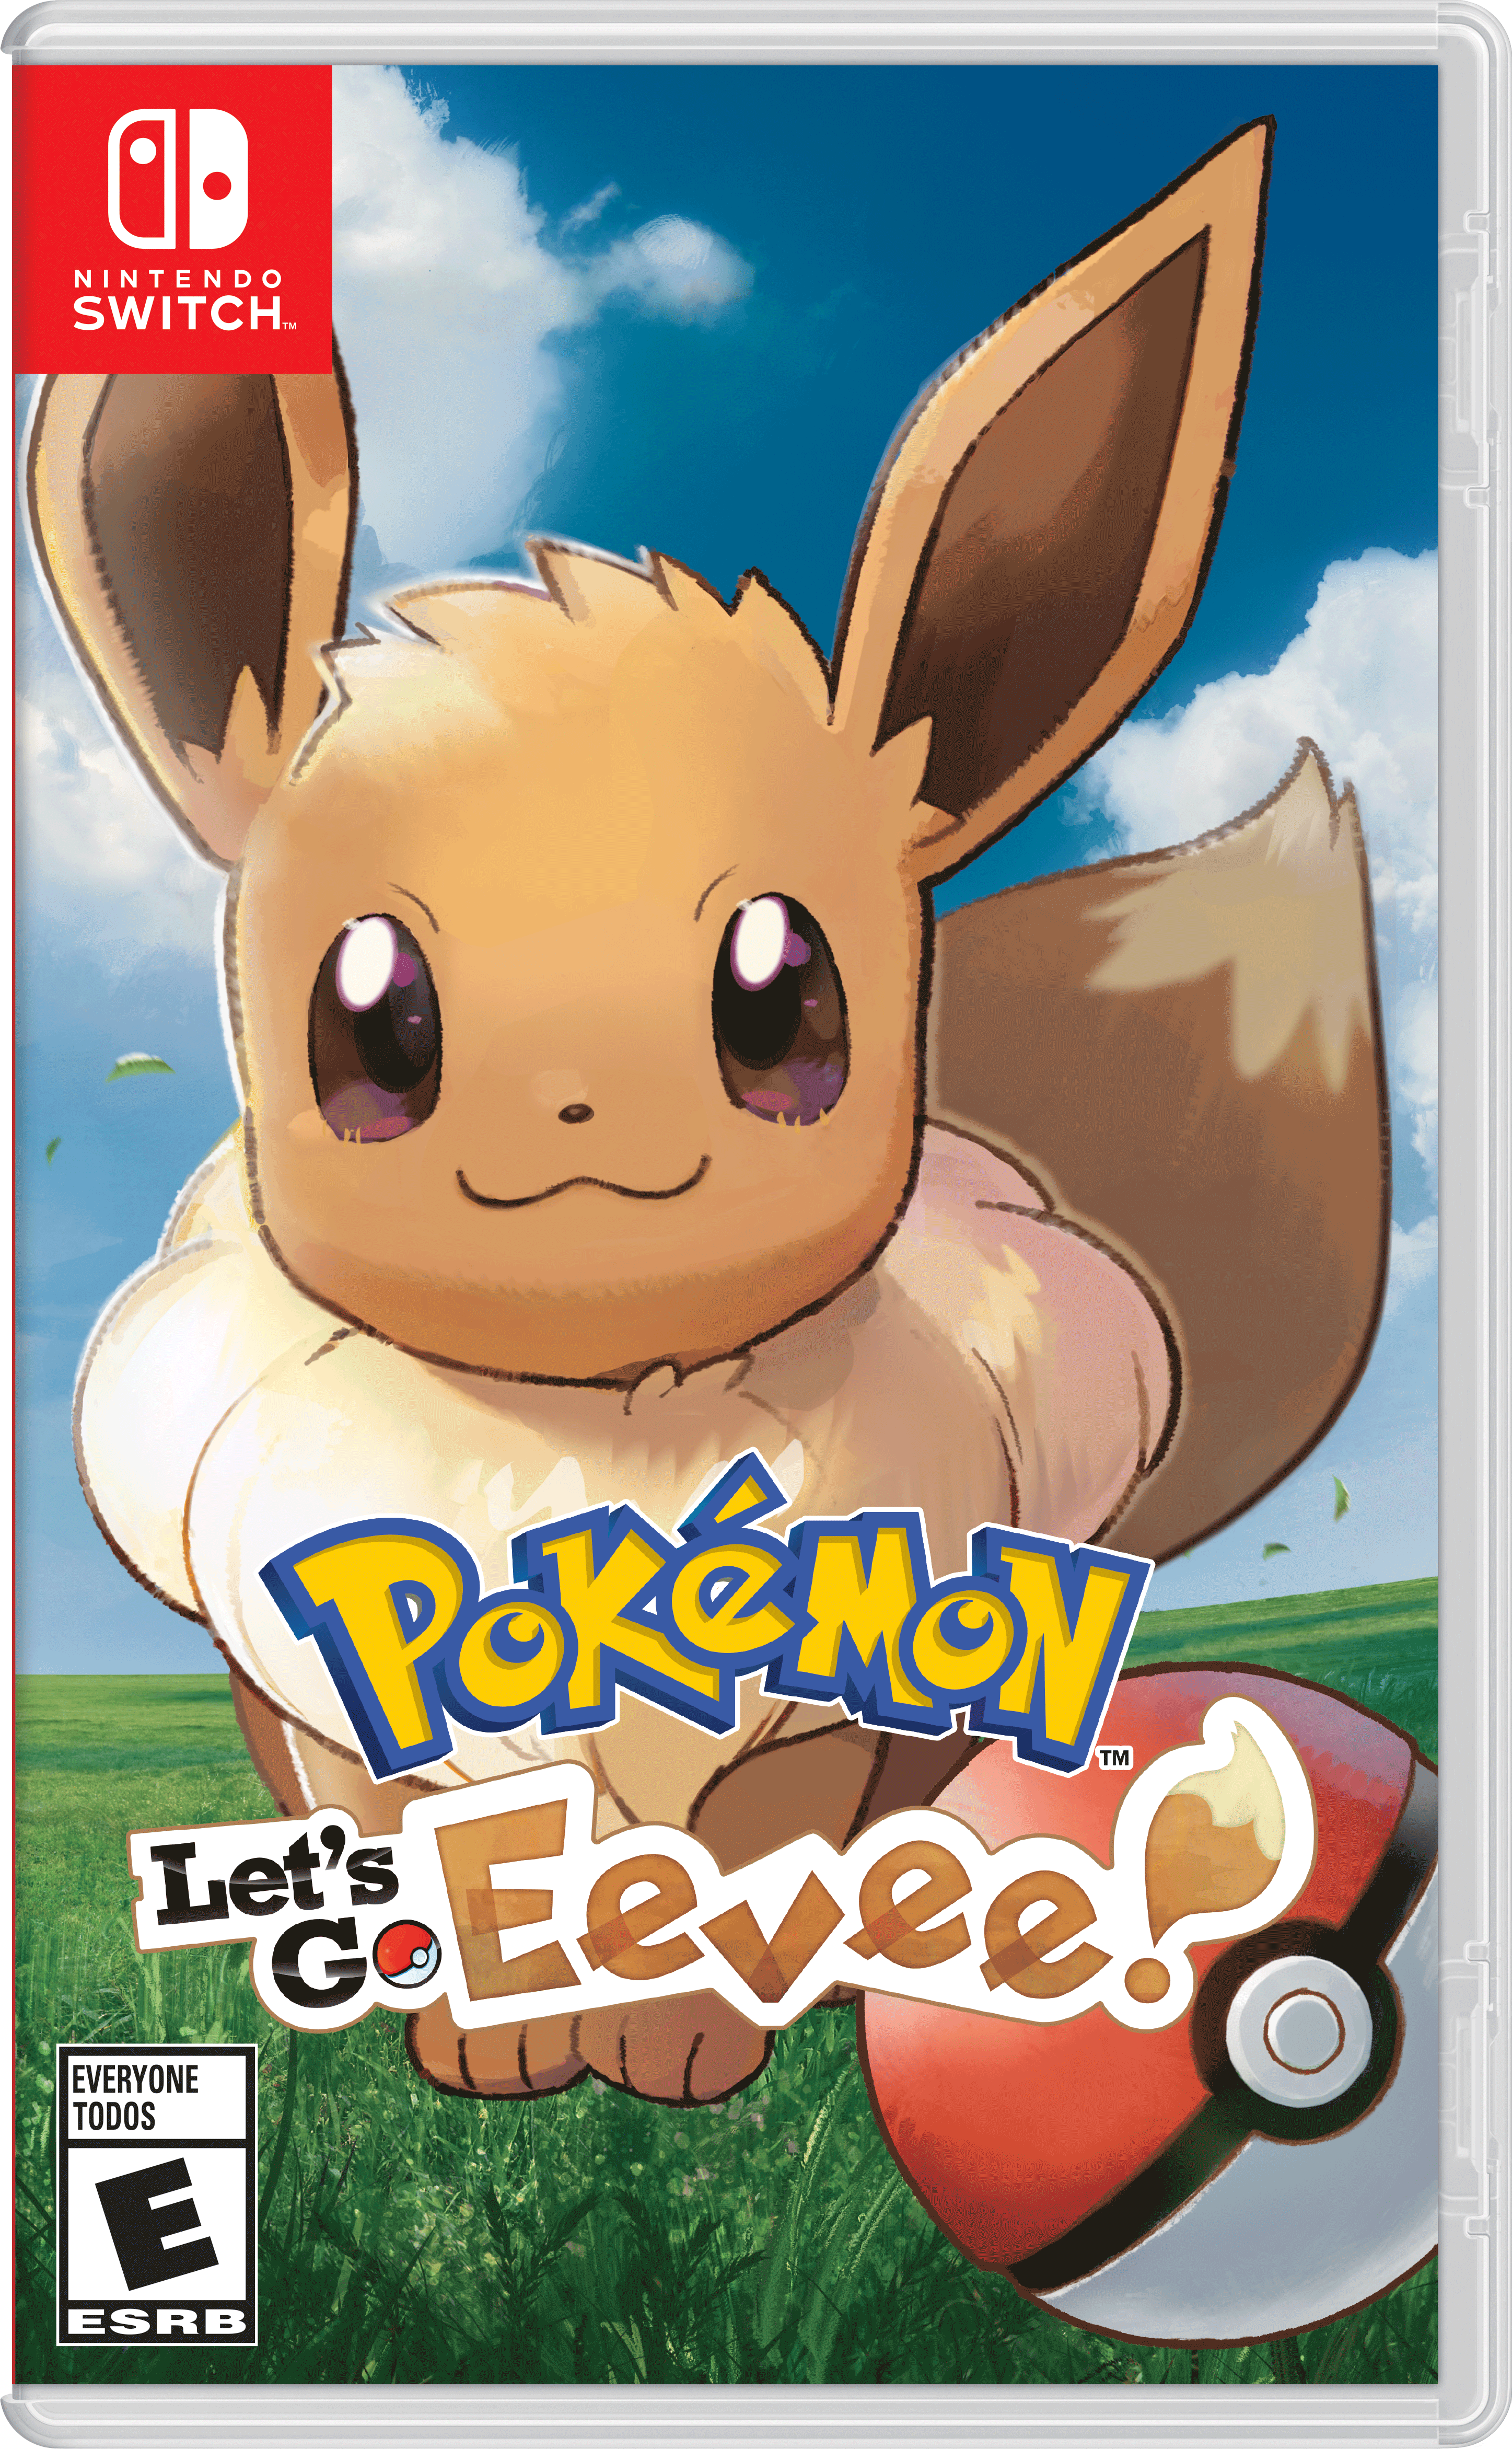 Eevee Games App Logo - Pokémon: Let's Go, Eevee! for Nintendo Switch Game Details